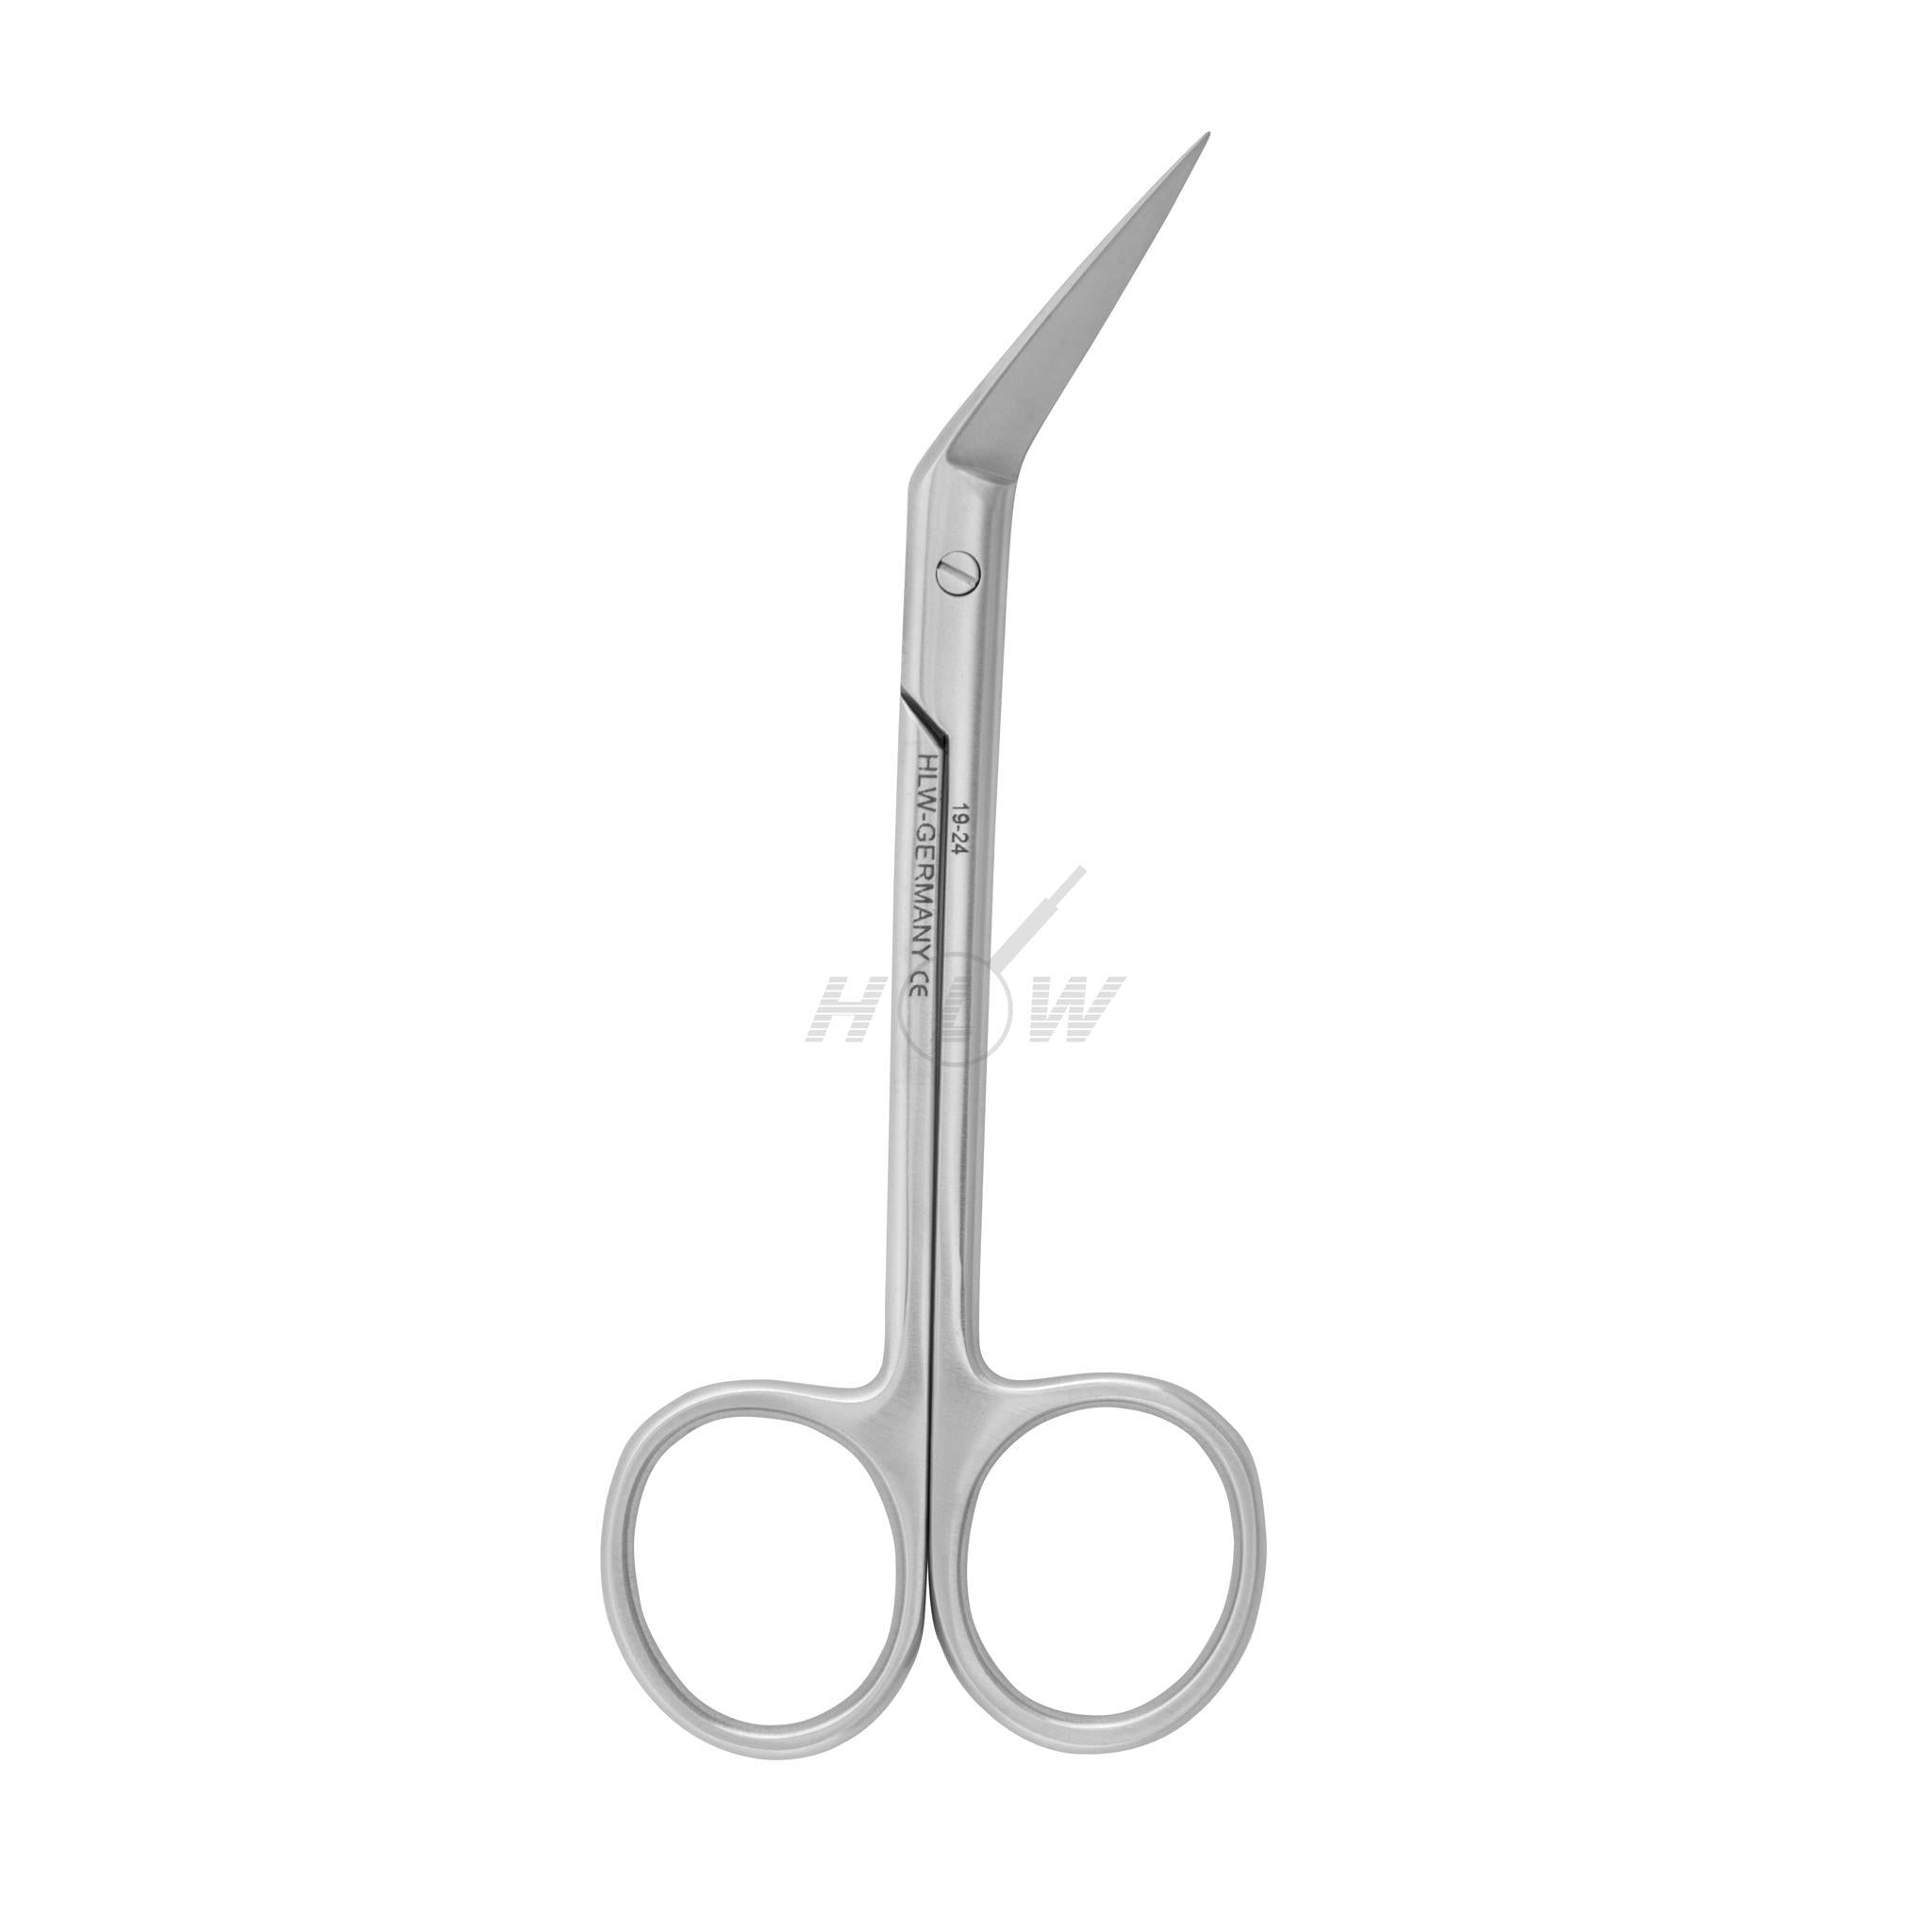 Thread scissors